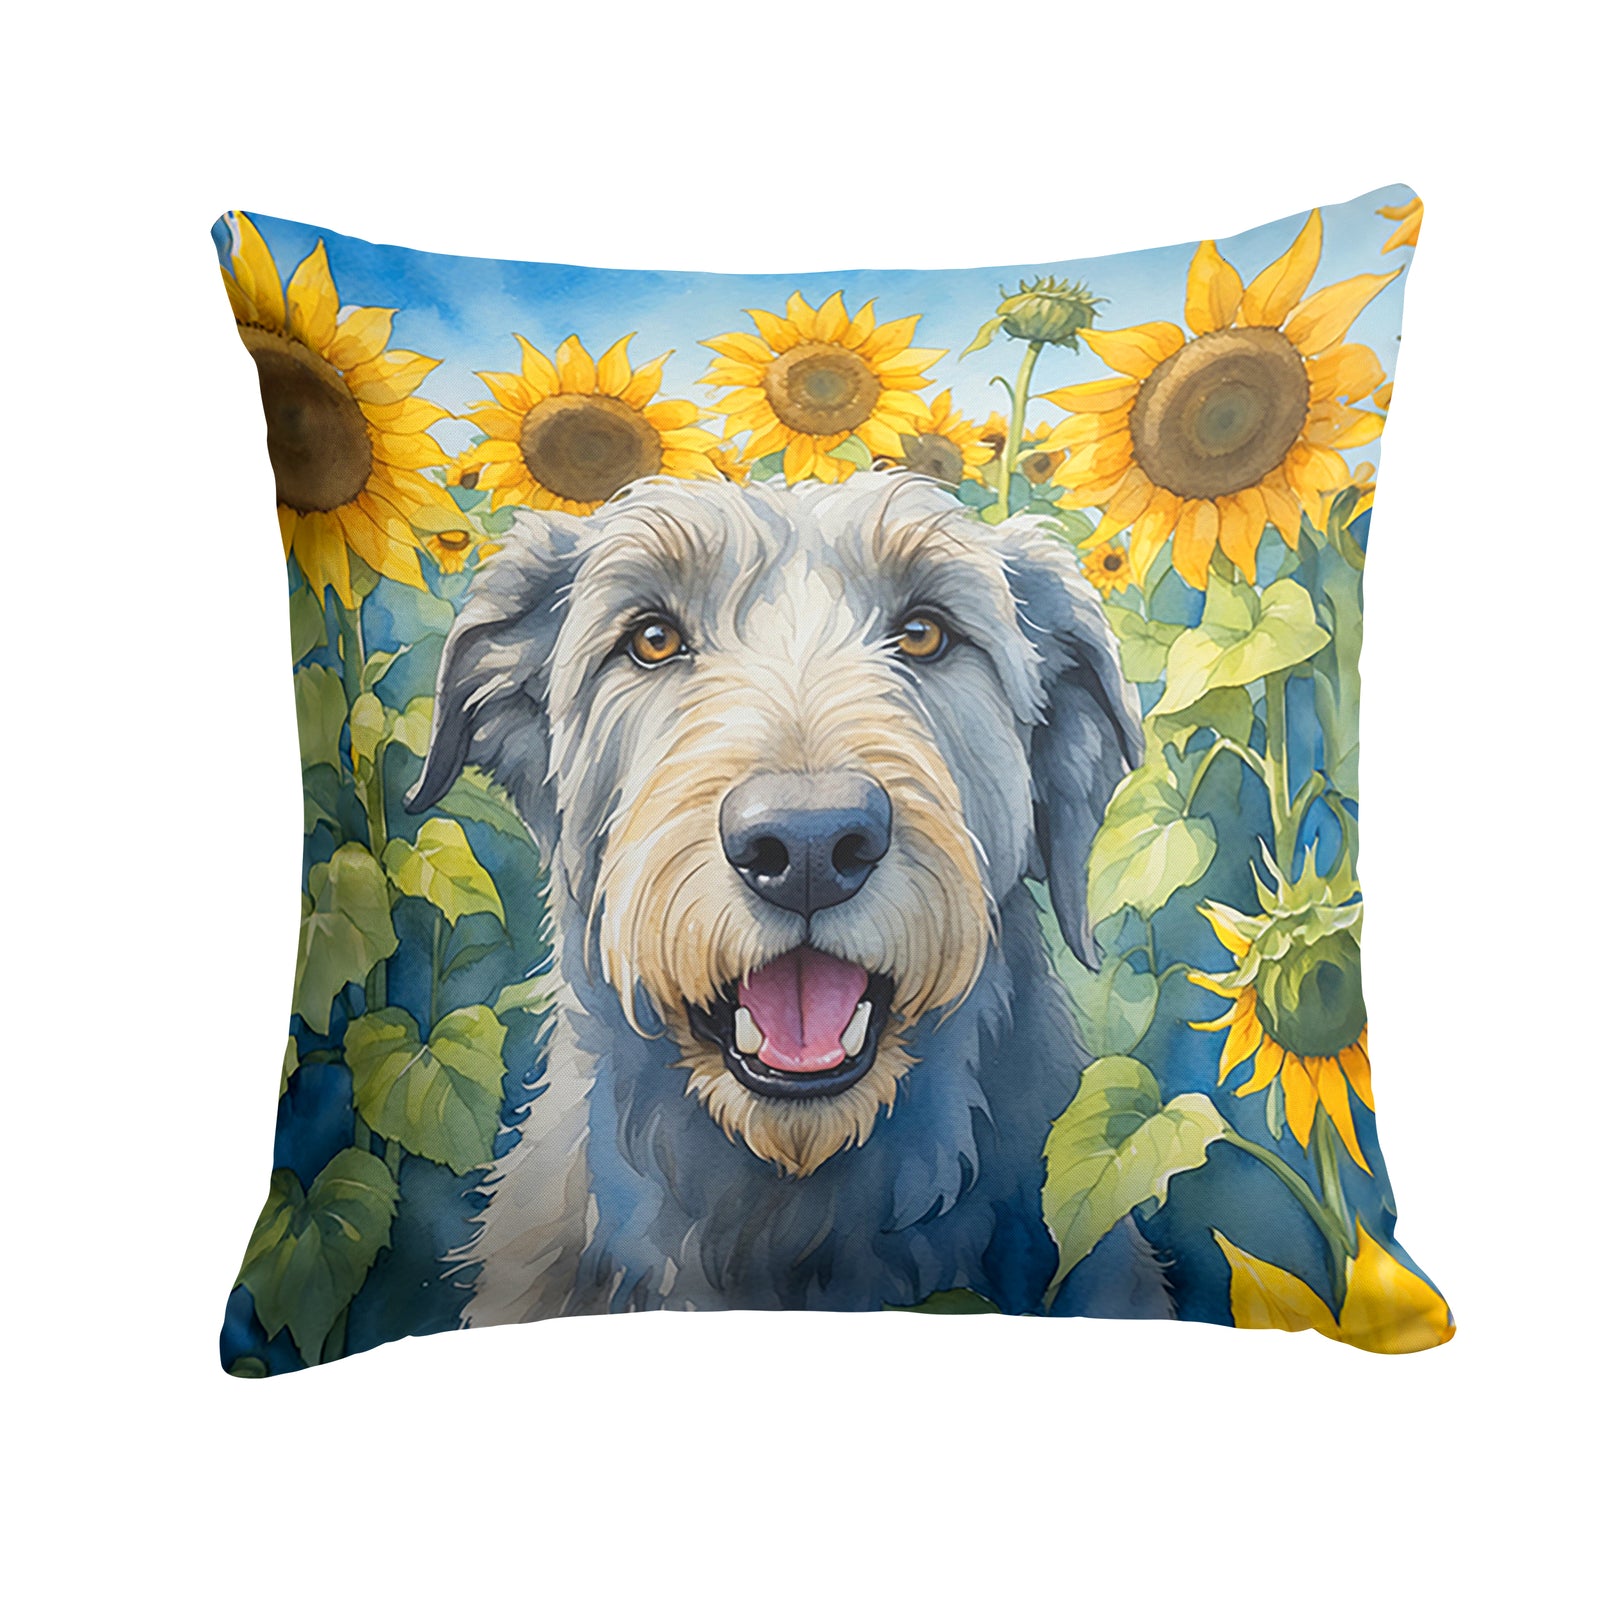 Buy this Irish Wolfhound in Sunflowers Throw Pillow